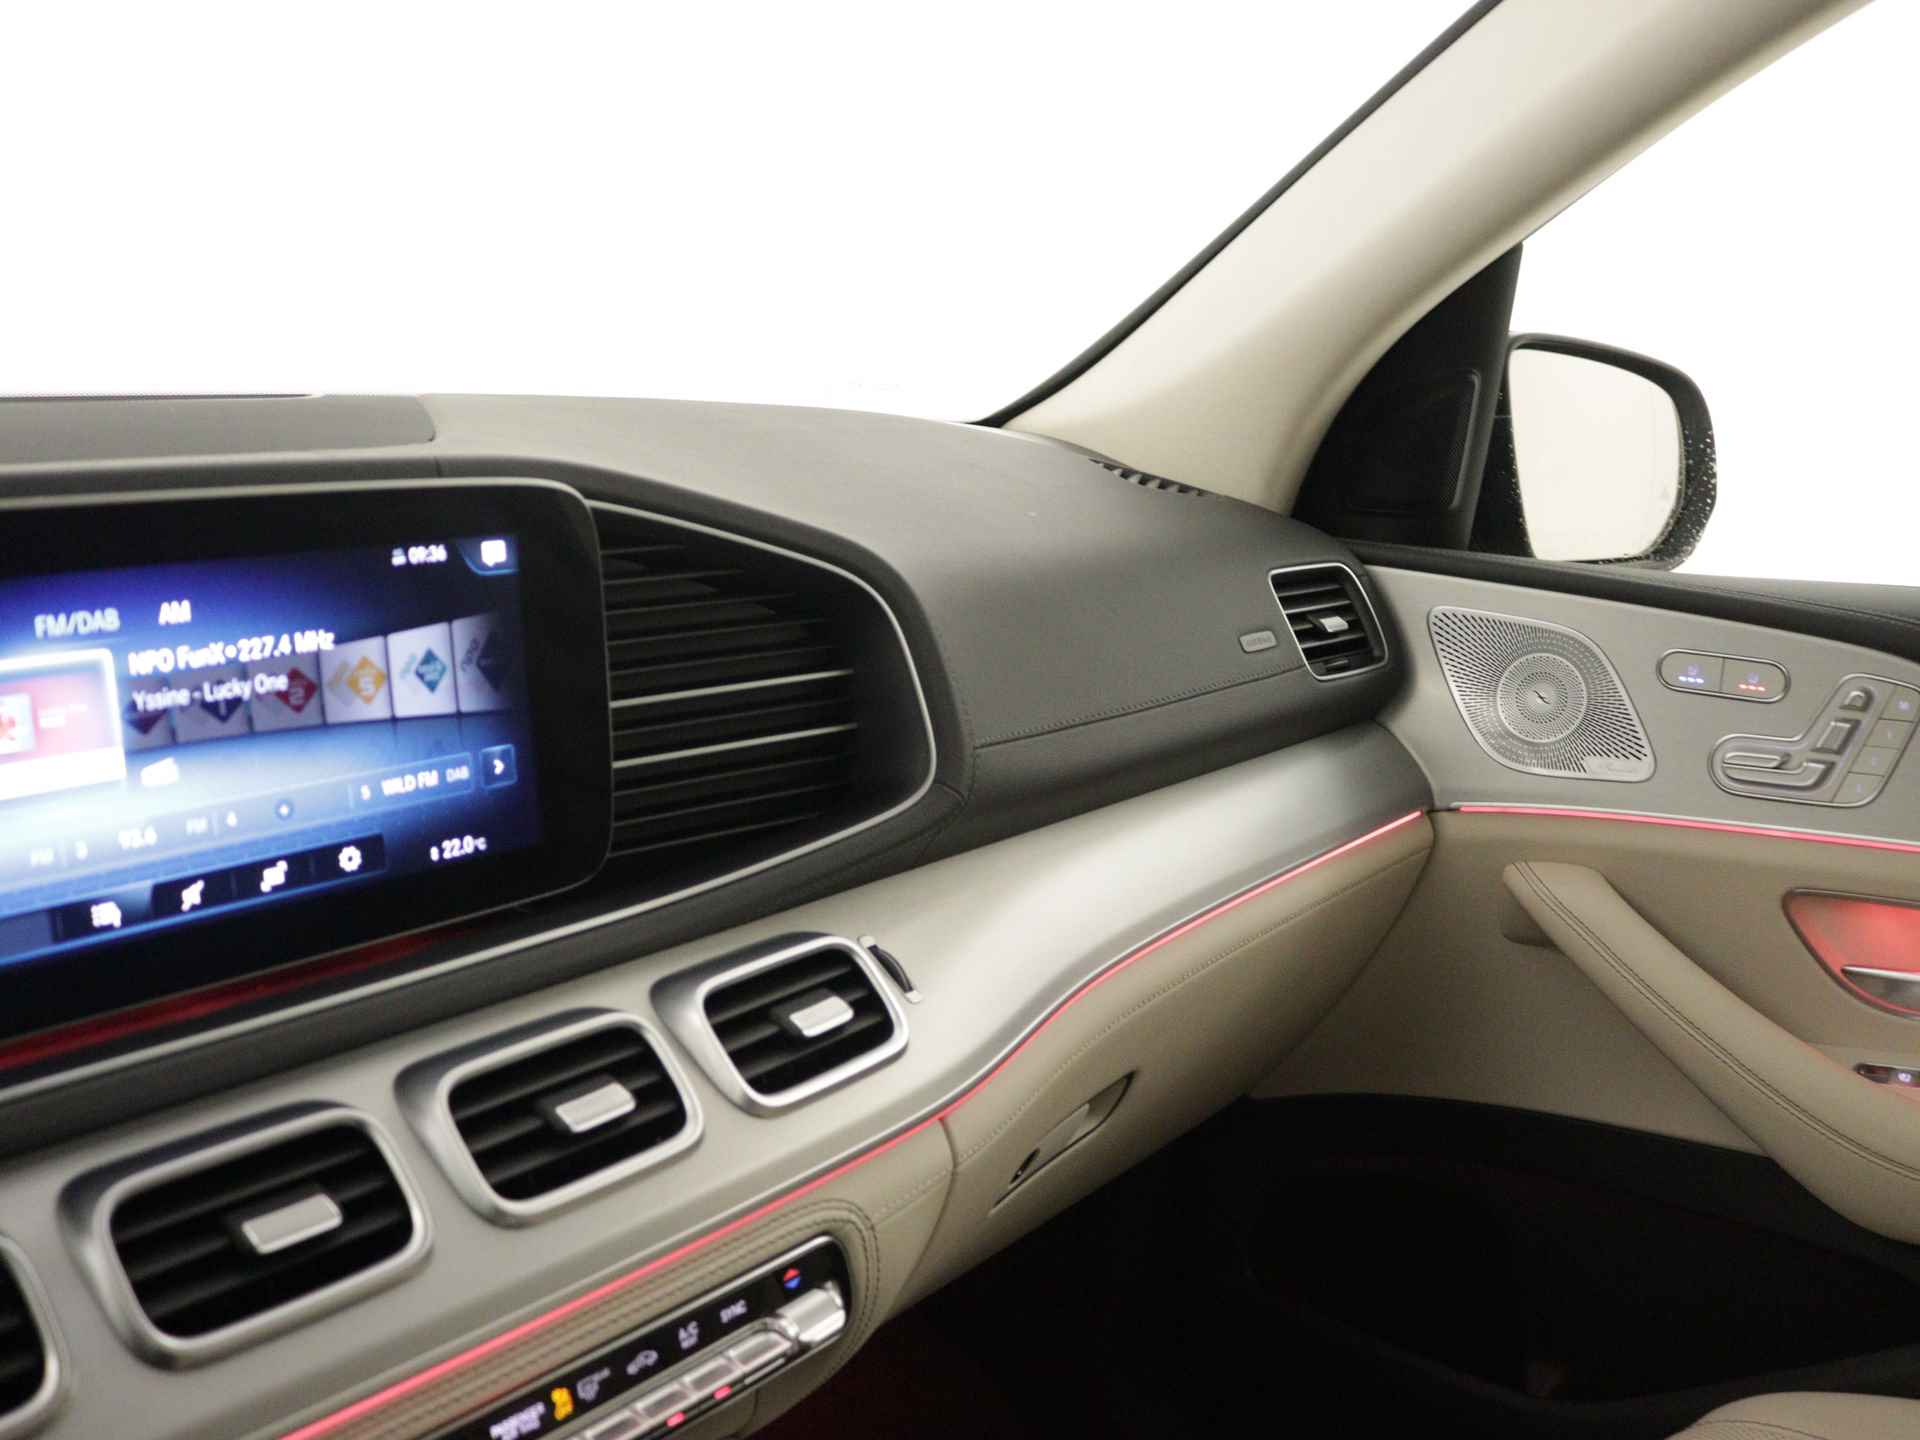 Mercedes-Benz GLE 450 4MATIC AMG Line Premium | Panoramadak | Luchtvering | Burmester | Navigatie | MBUX wide screen | Alarm klasse 3 | Parking support | inclusief 24 maanden MB Certified garantie voor europa - 7/39